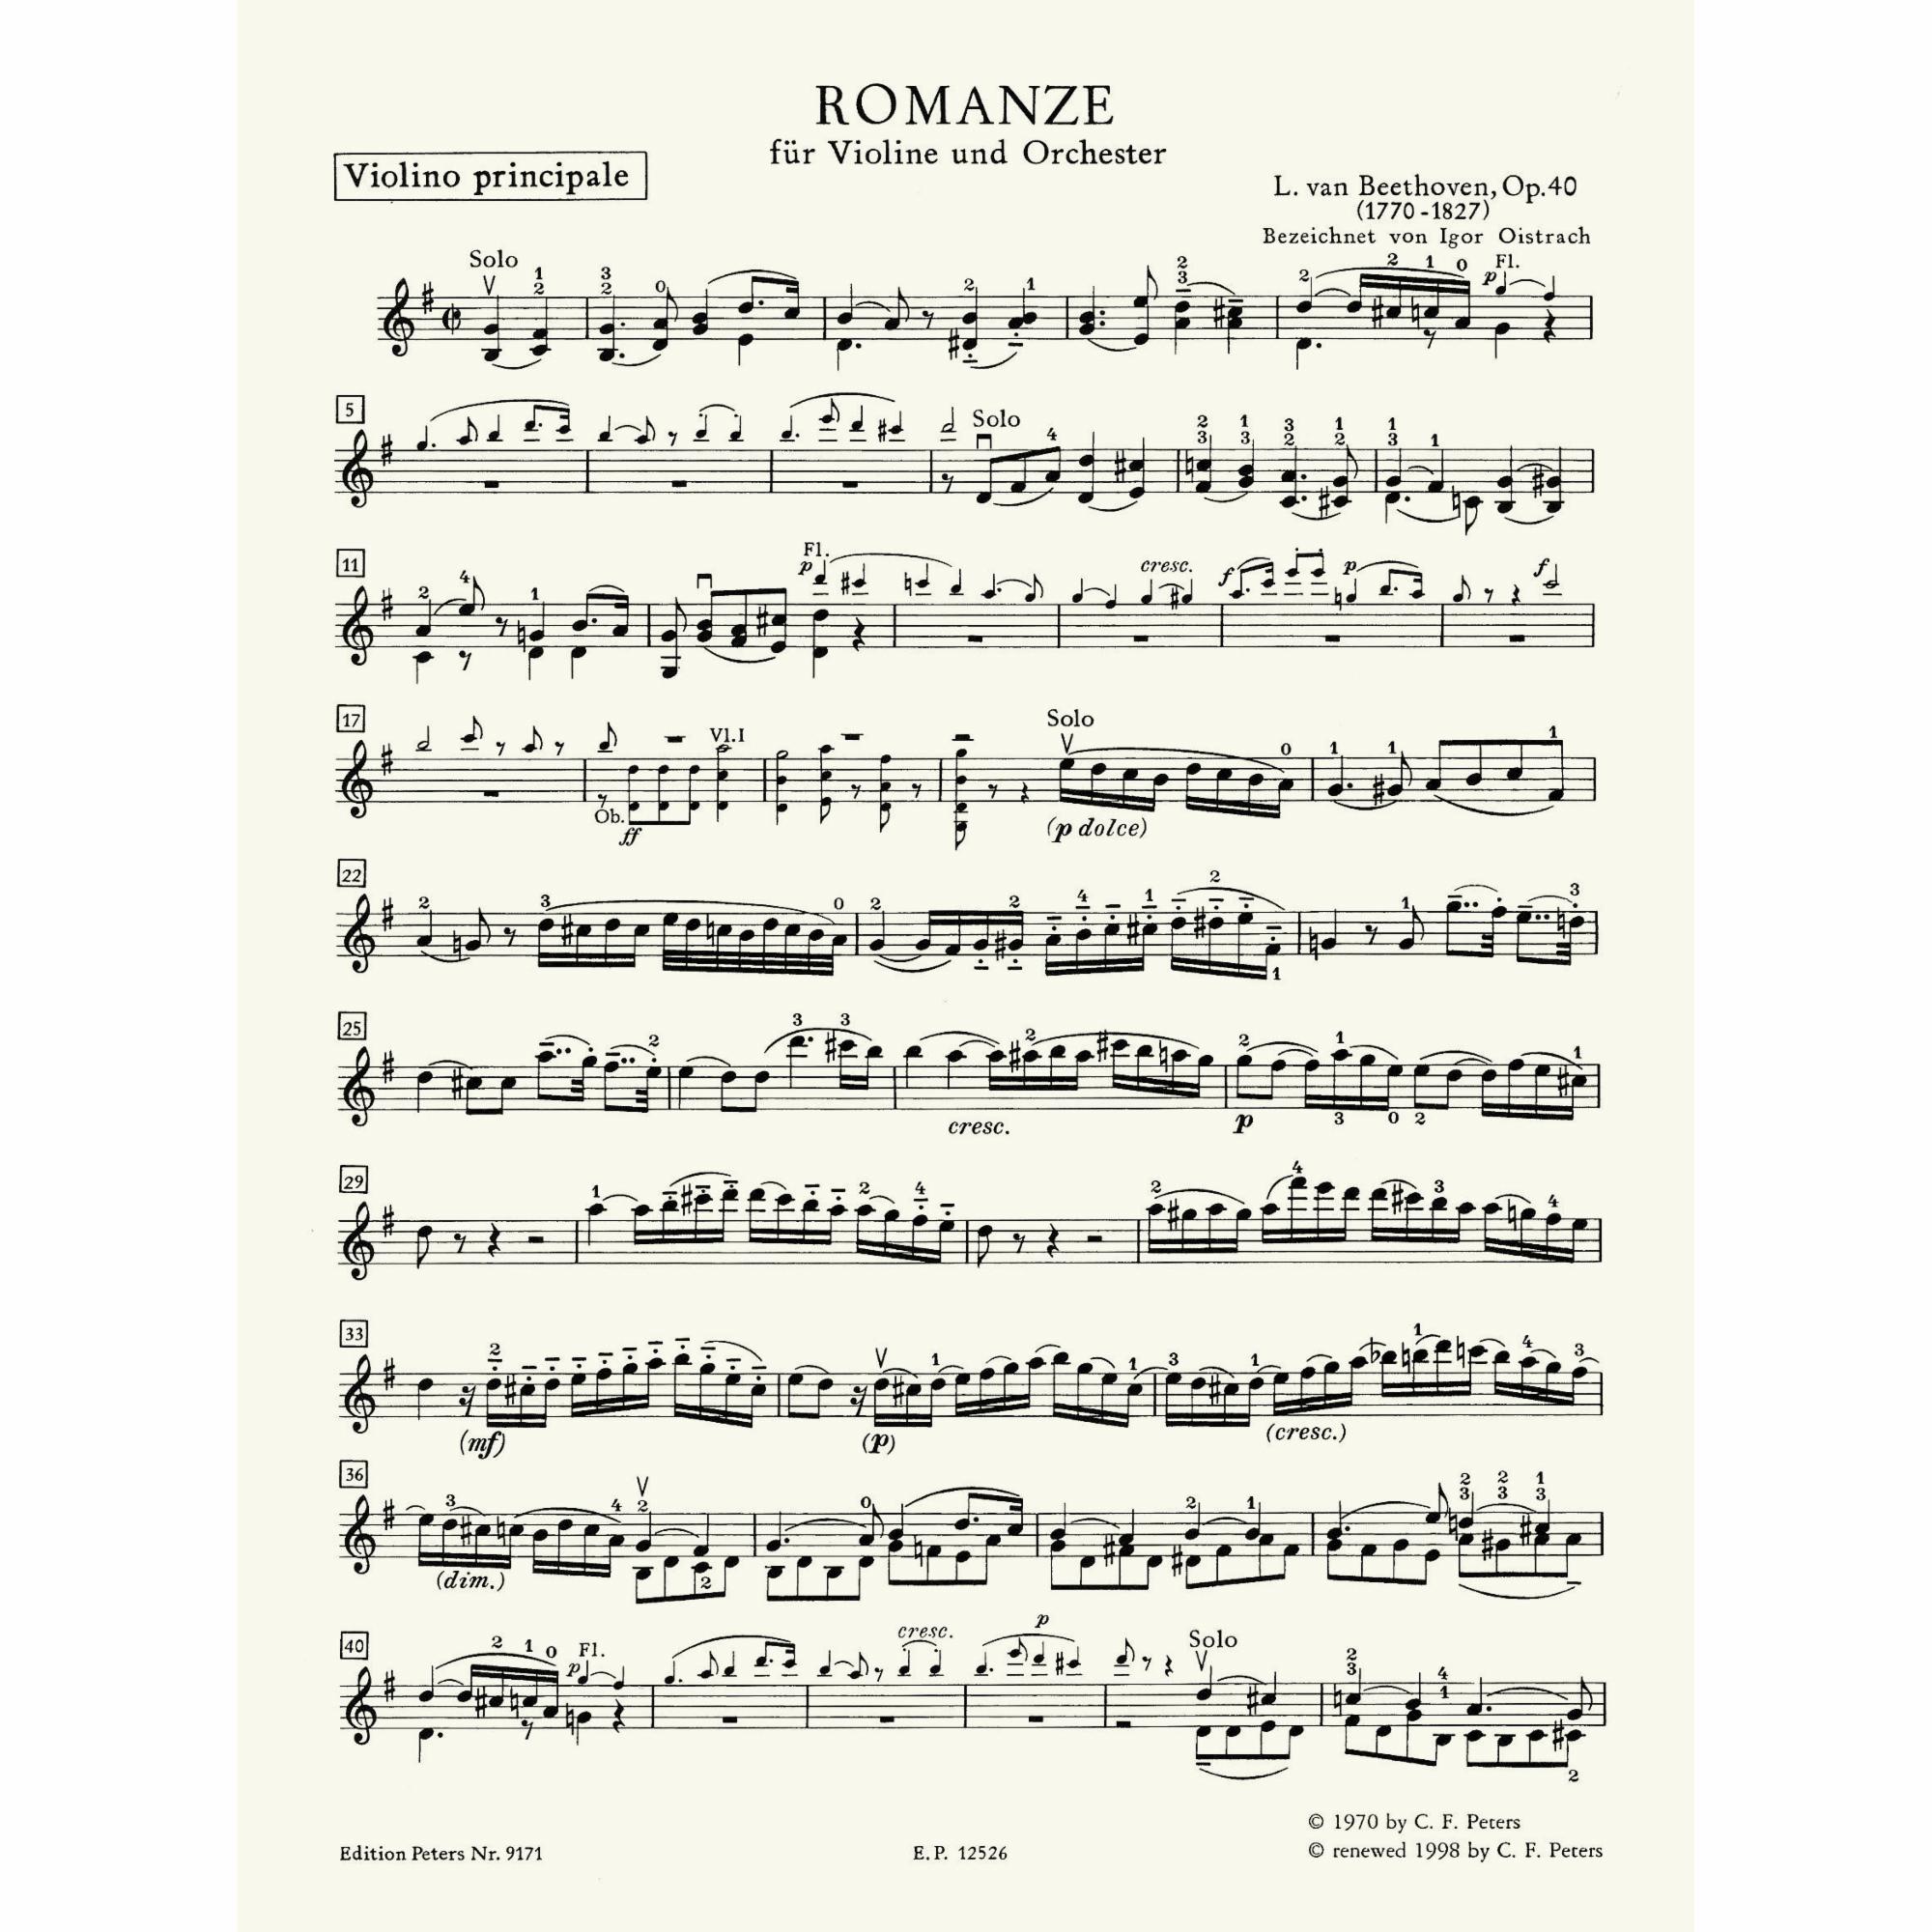 Sample: Violin (Pg. 2)